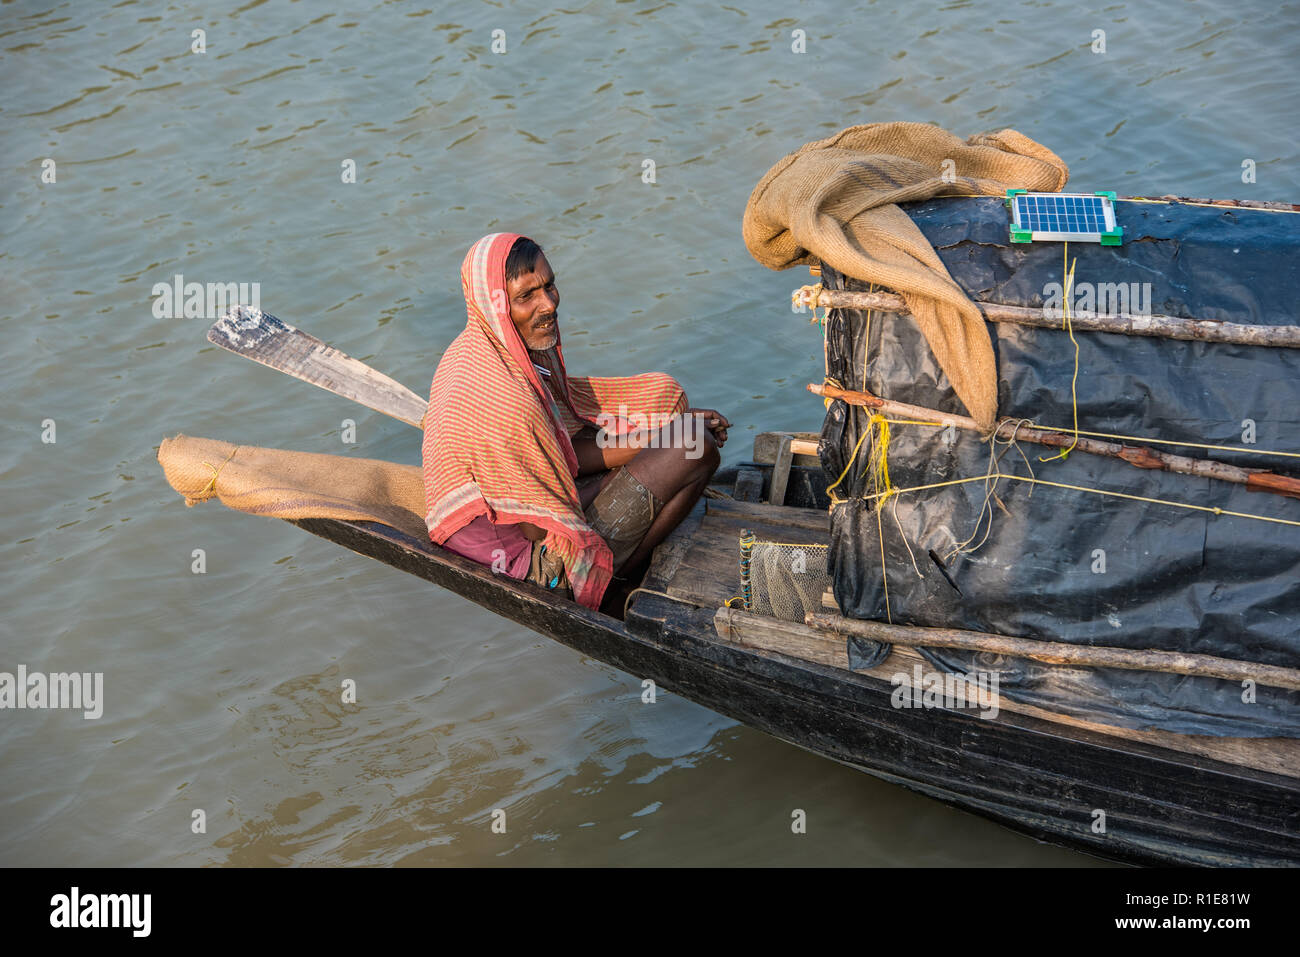 La giustapposizione di tradizione e modernità: un pescatore in carica della sua umile barca a remi si basa su pannelli solari per caricare i suoi gadget! Foto Stock